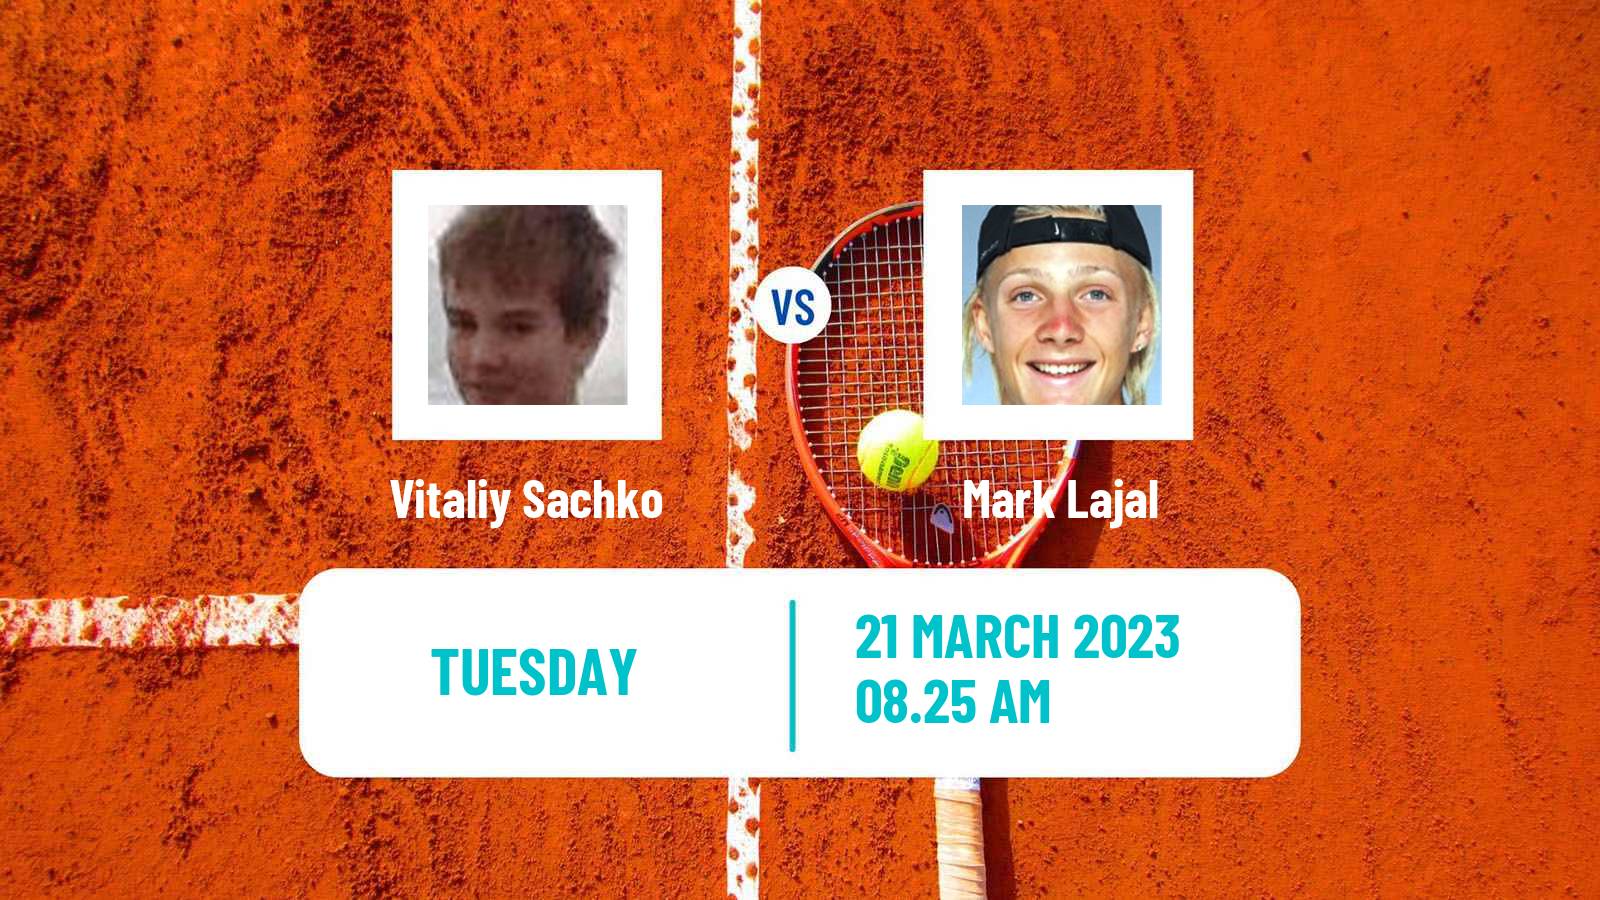 Tennis ATP Challenger Vitaliy Sachko - Mark Lajal